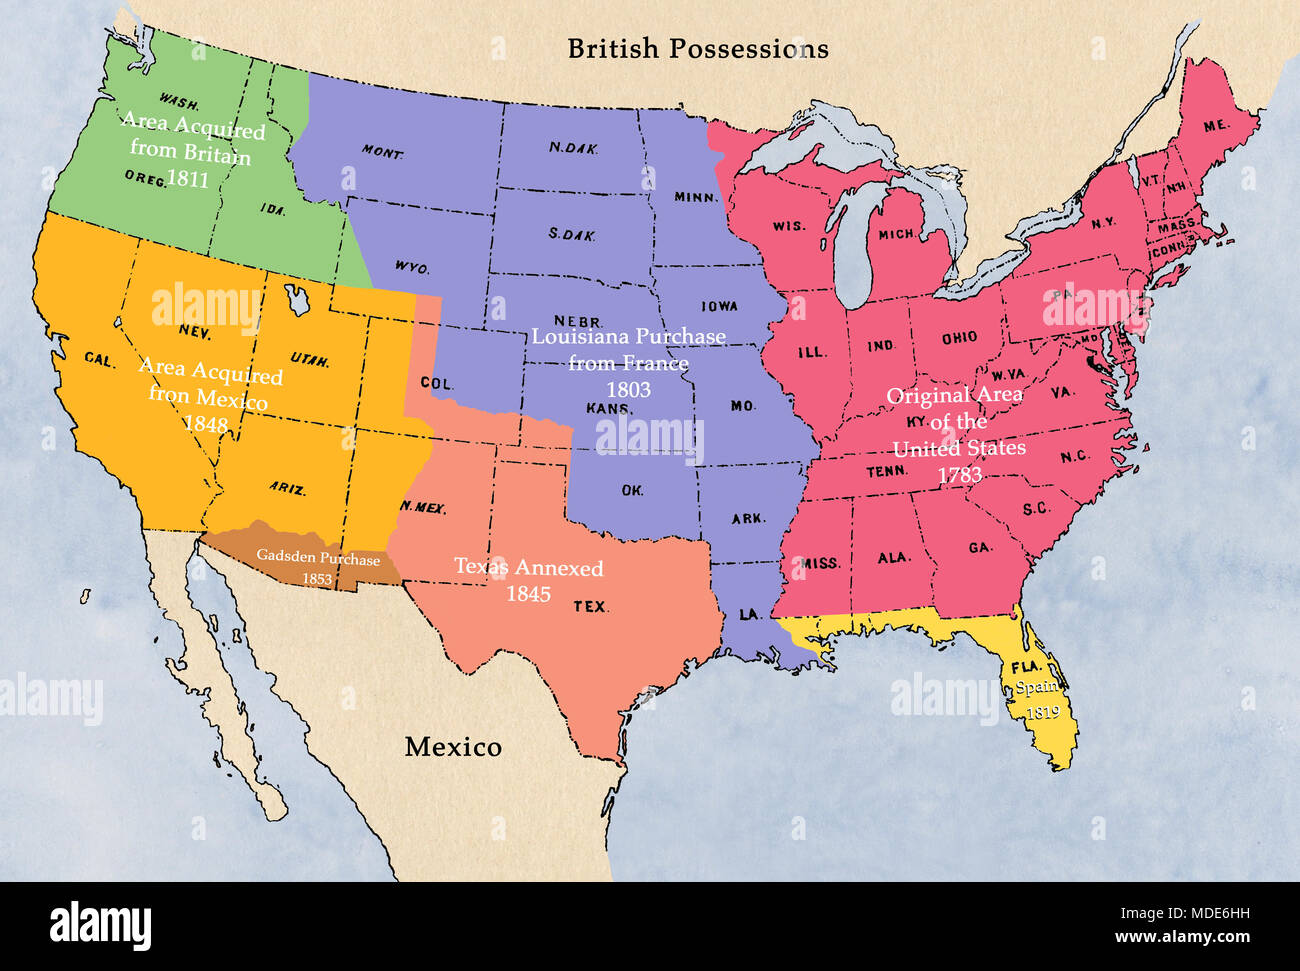 Plan de l'acquisition de territoires par les États-Unis. Illustration numérique Banque D'Images